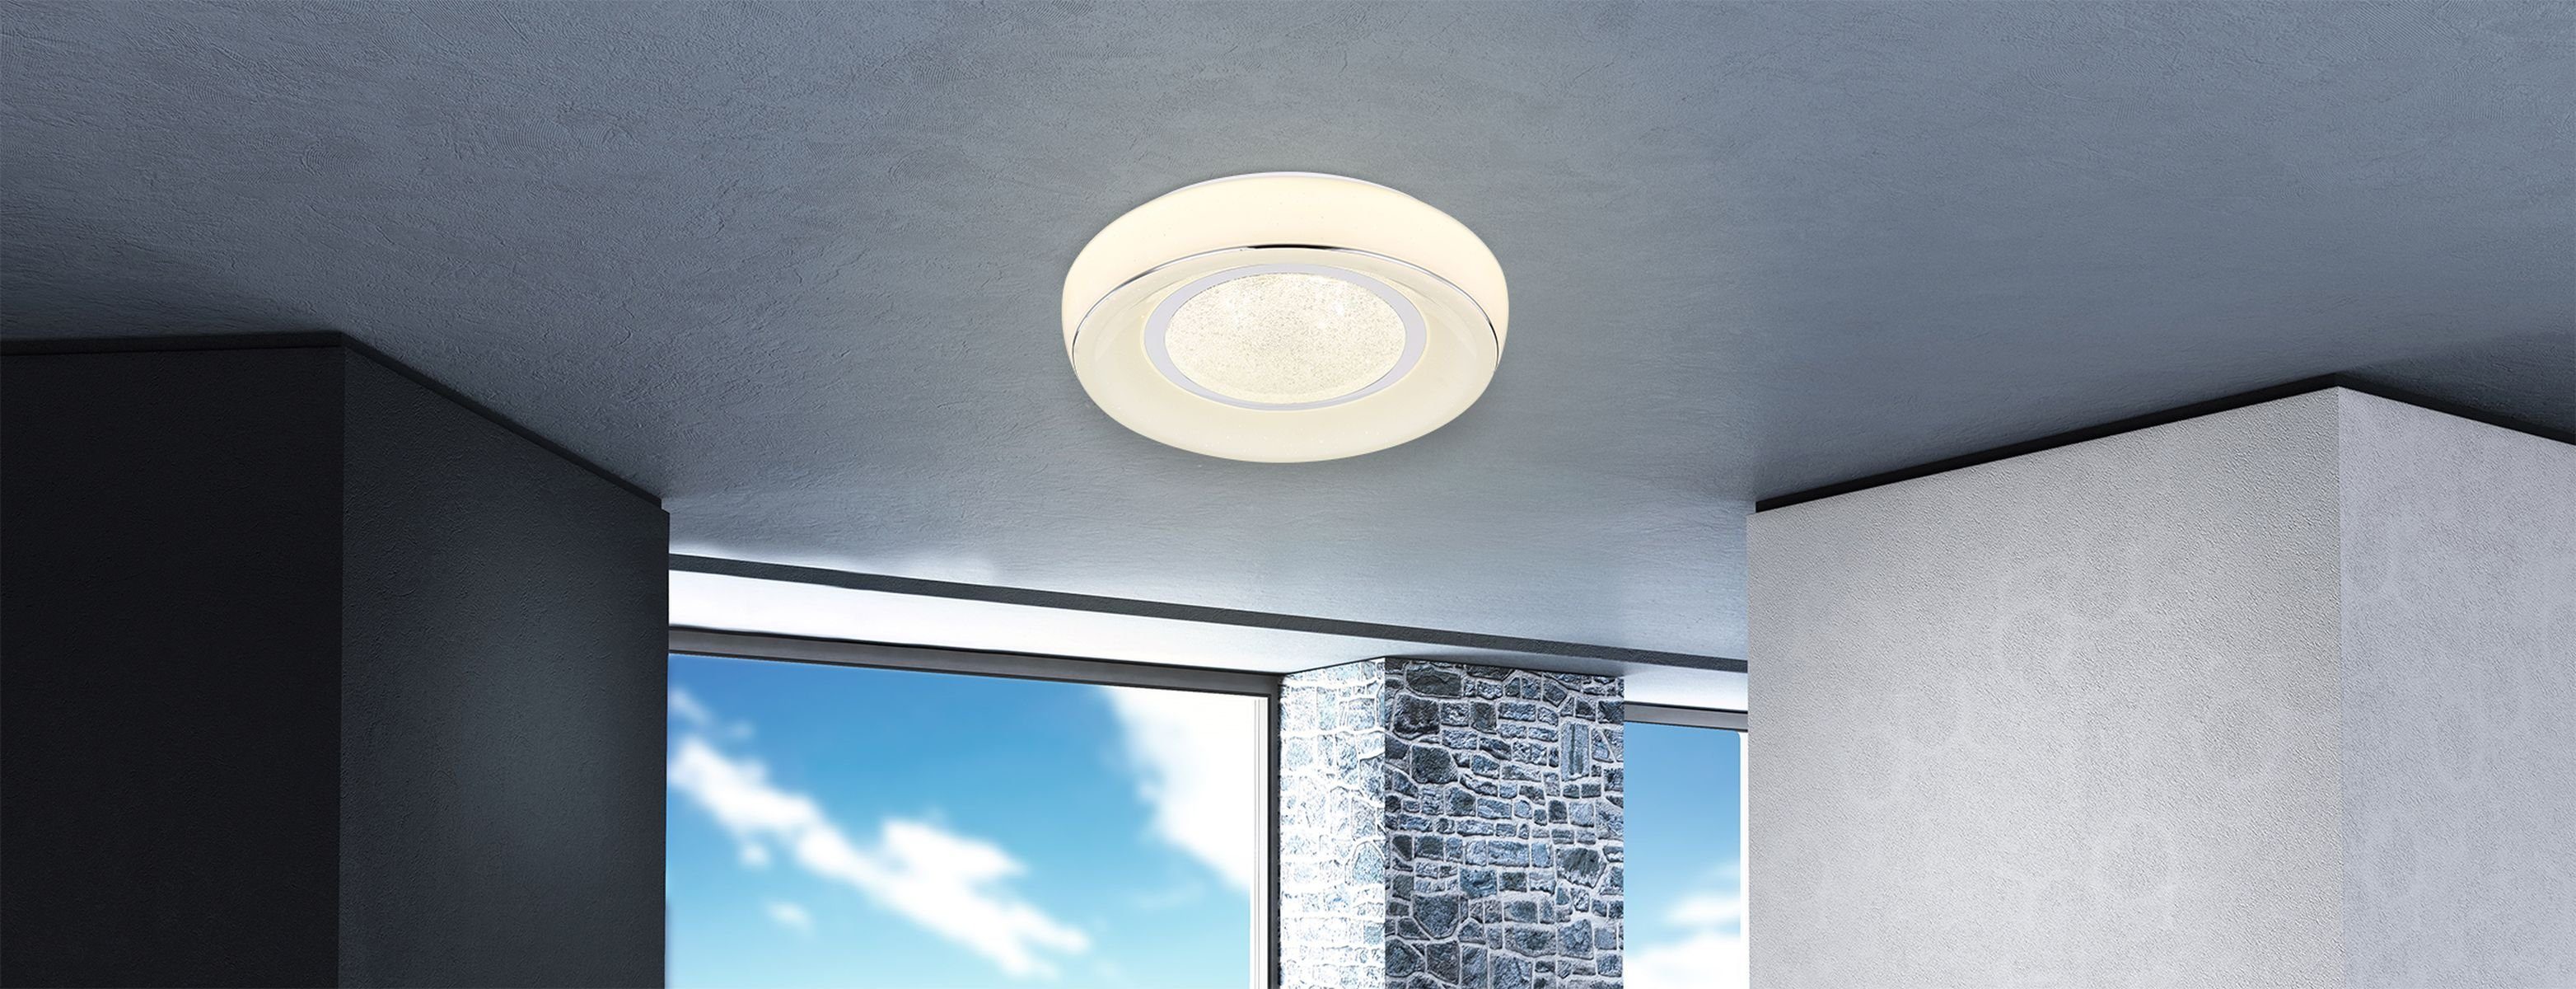 GLOBO Deckenleuchte Deckenlampe LED dimmbar Deckenleuchte Globo Fernbedienung Wohnzimmer